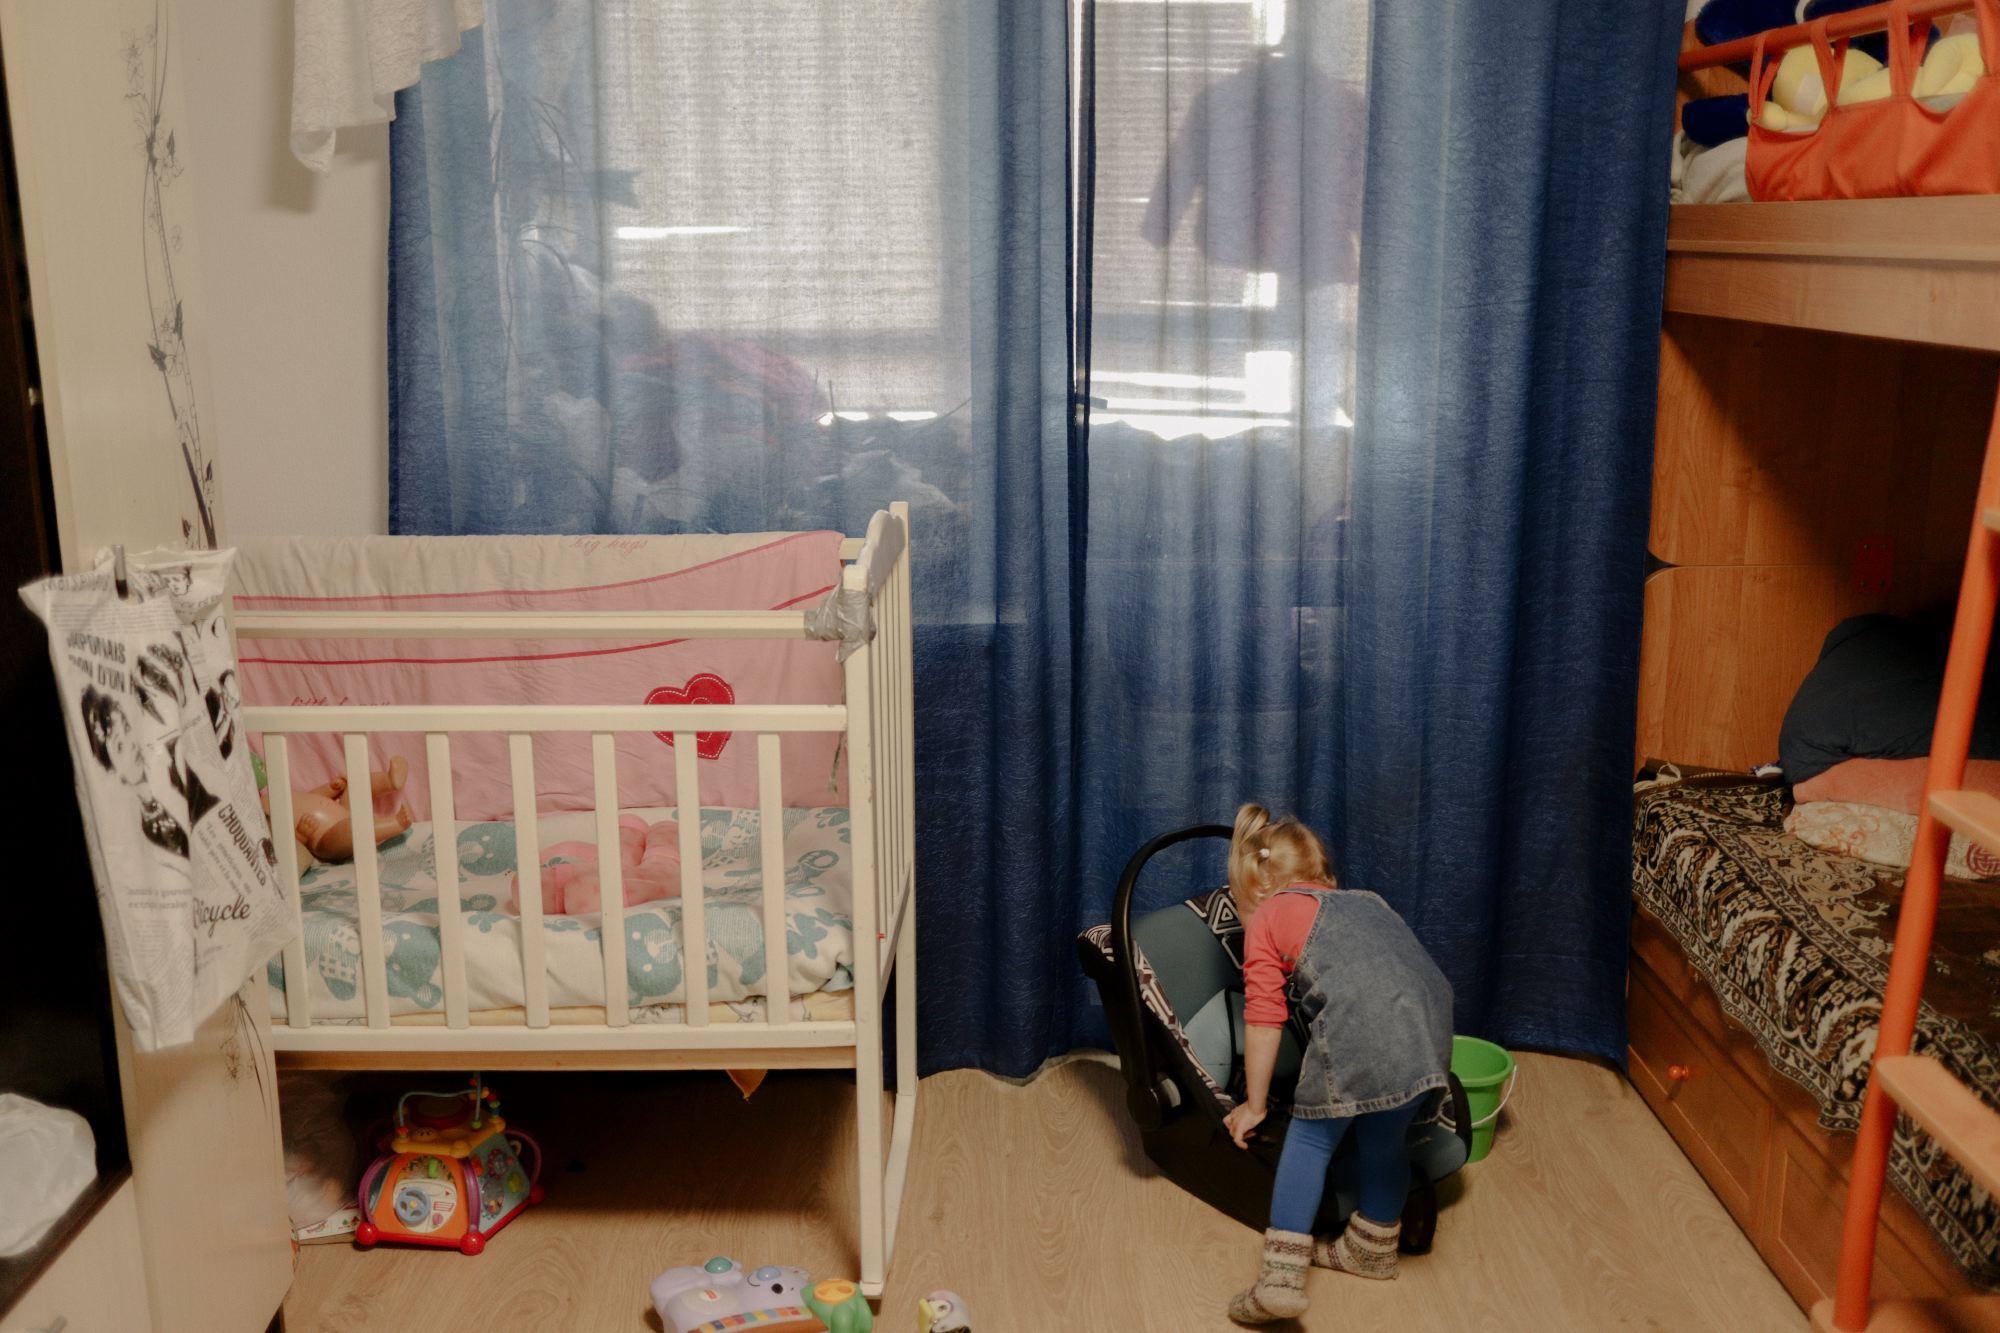 Камилла ищет свою игрушку в доме  Фото: Мария Гельман / VII Photo Agency для ТД